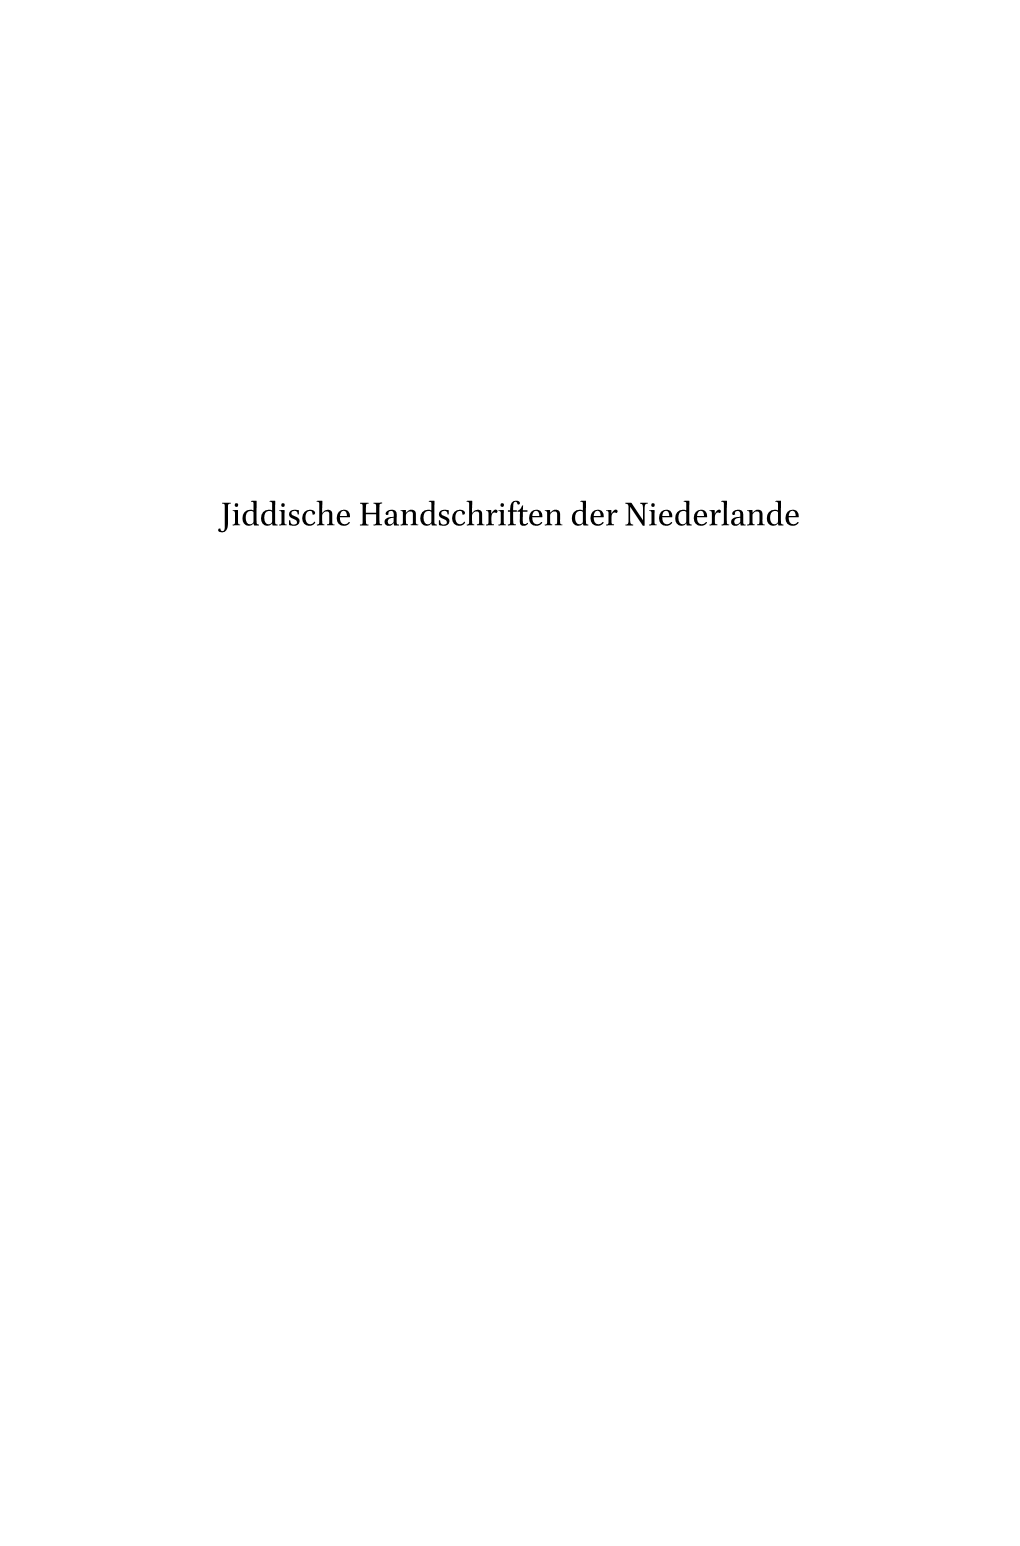 Jiddische Handschriften Der Niederlande Studies in Jewish History and Culture